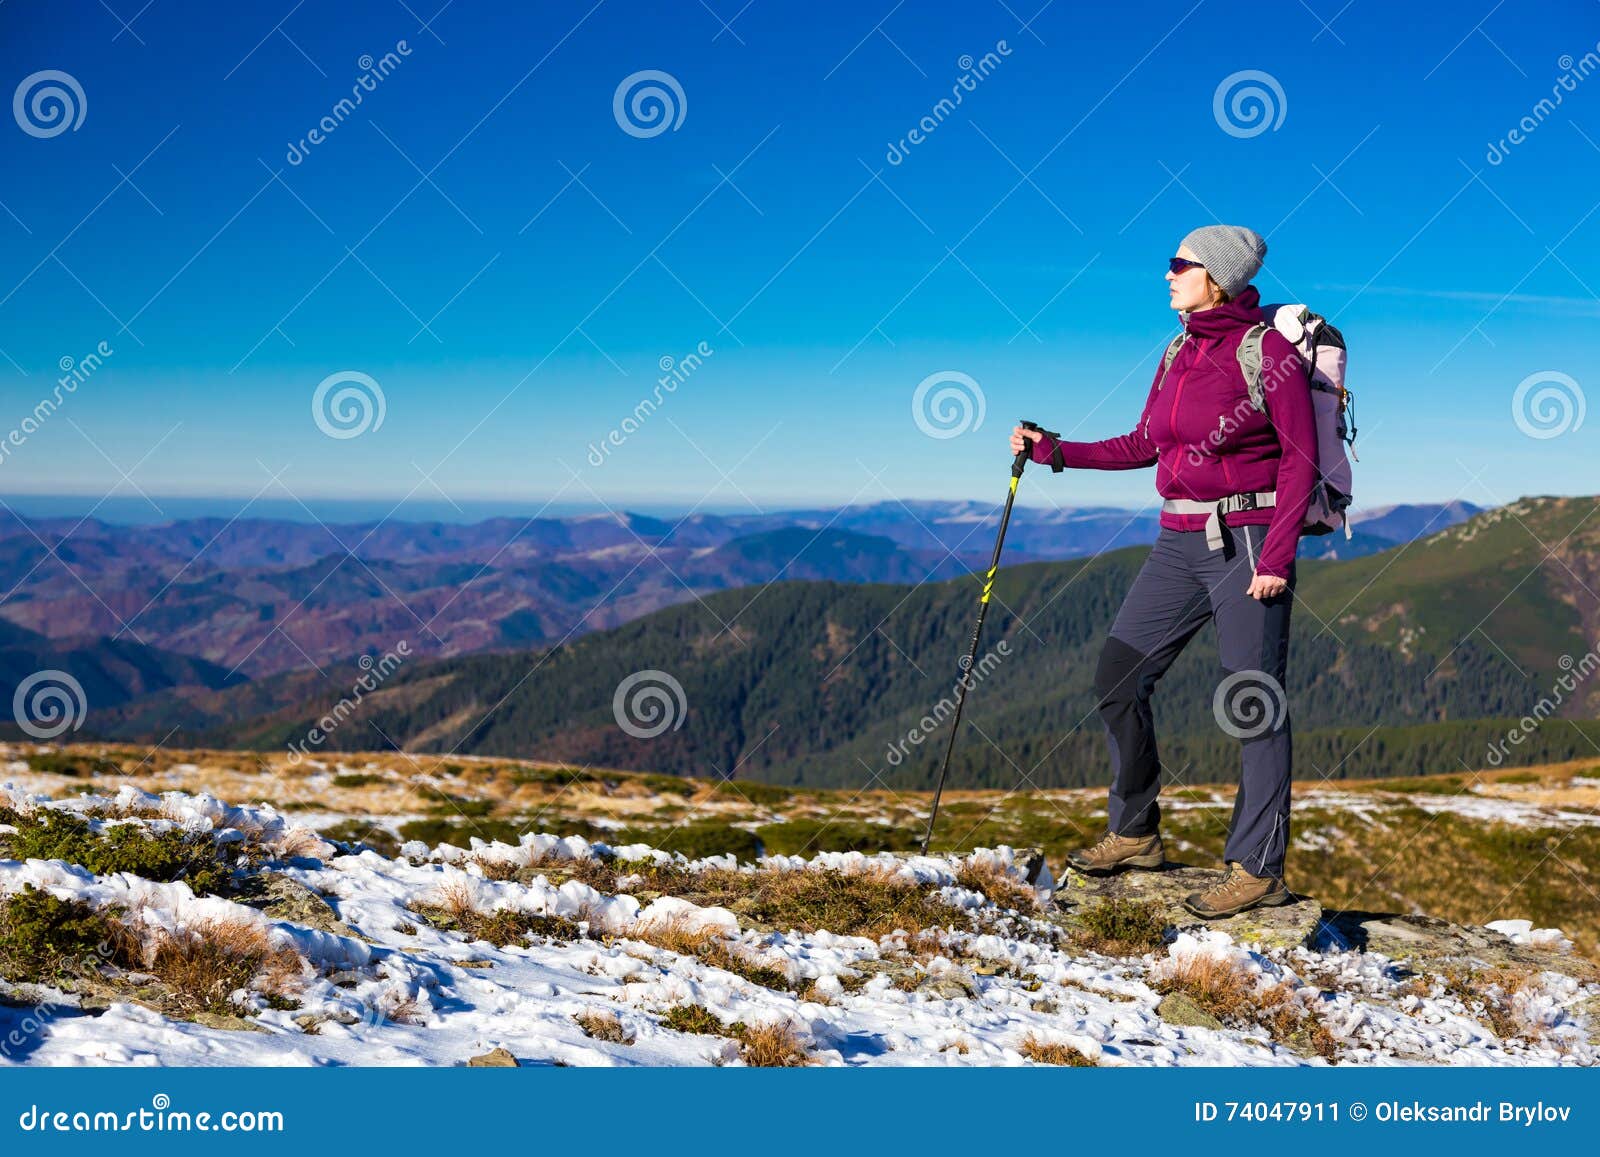 mountain walking clothing